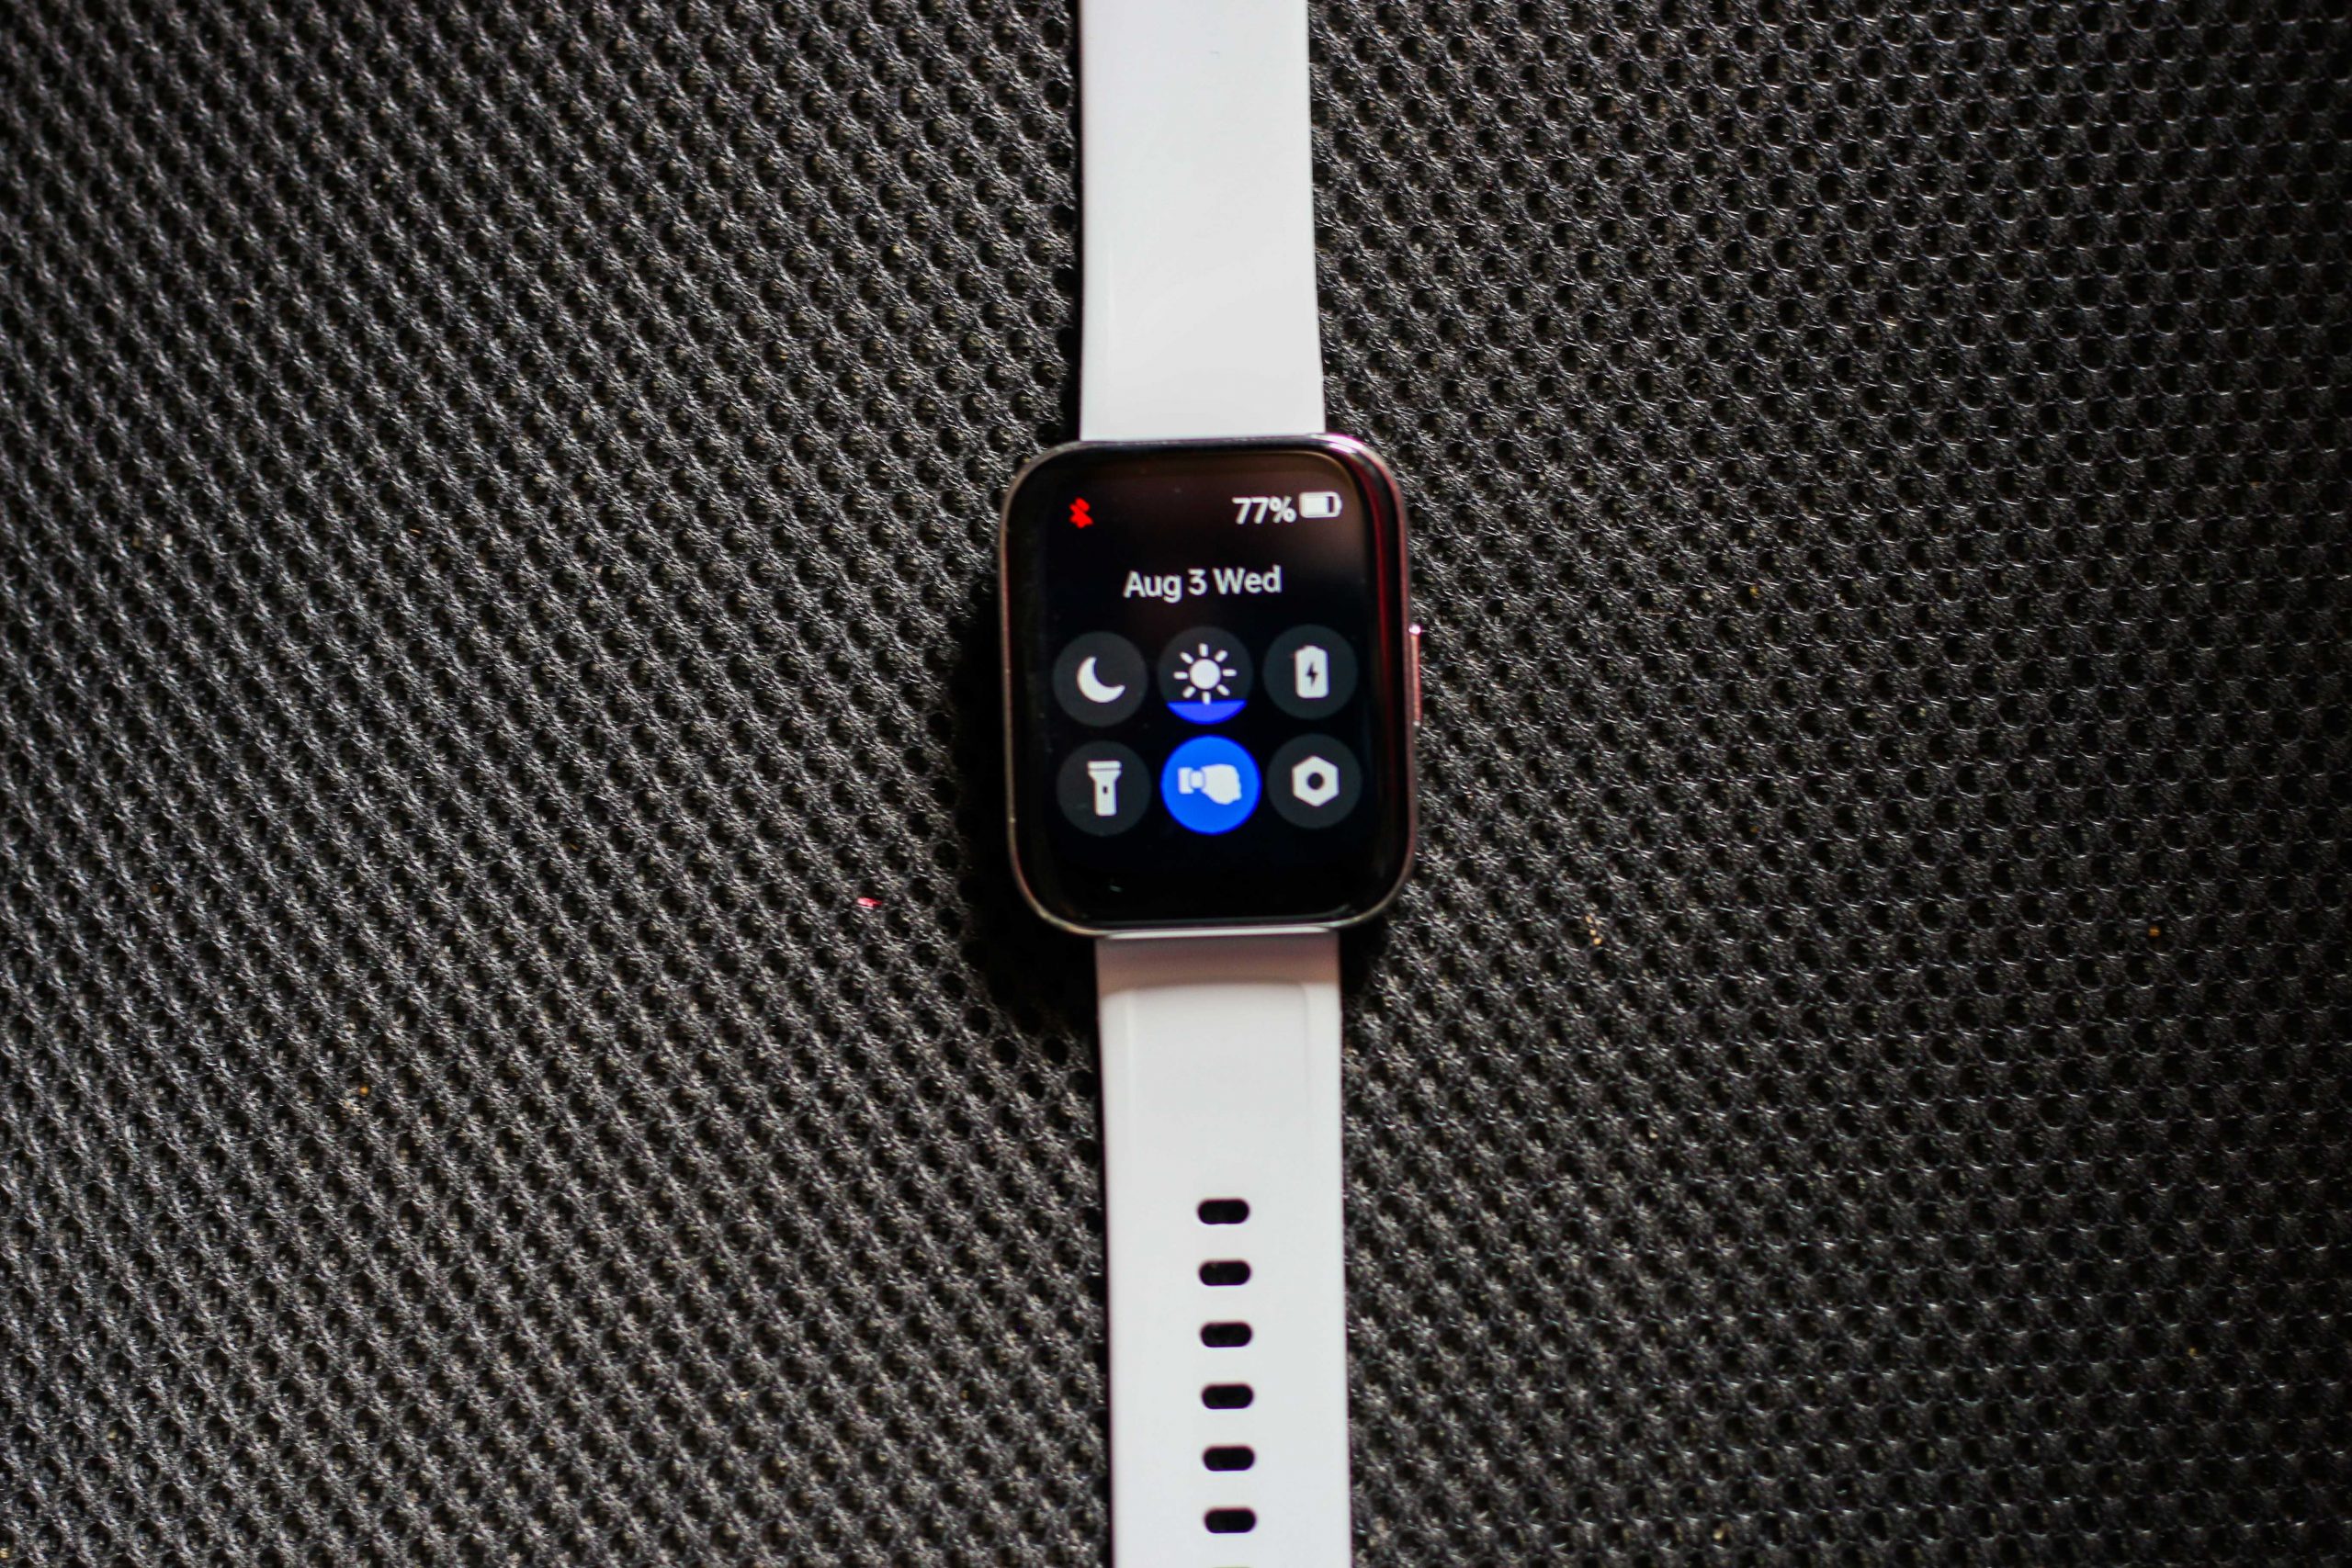 Realme Watch 3 IP68 Waterproof Sports Smartwatch - Black